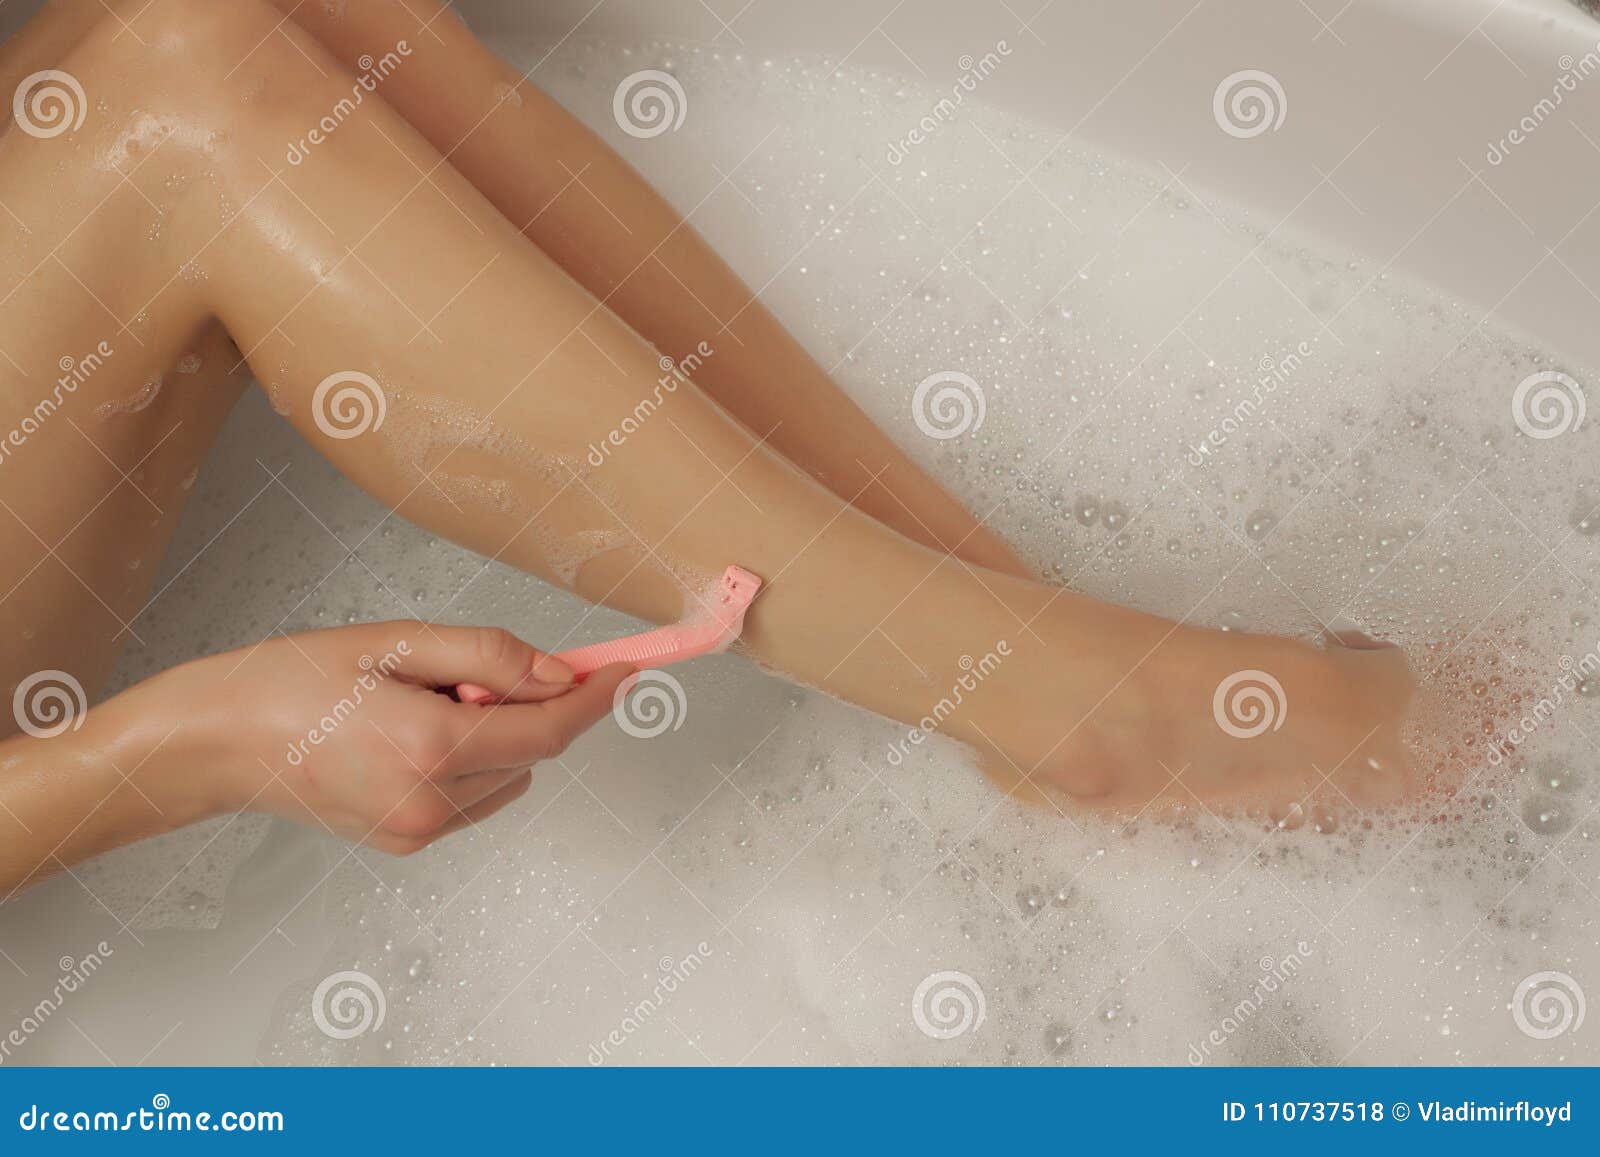 Полненькие брить. Девушка с бритыми ногами. Девочки Бреются в ванной. Женщина бреет ноги.